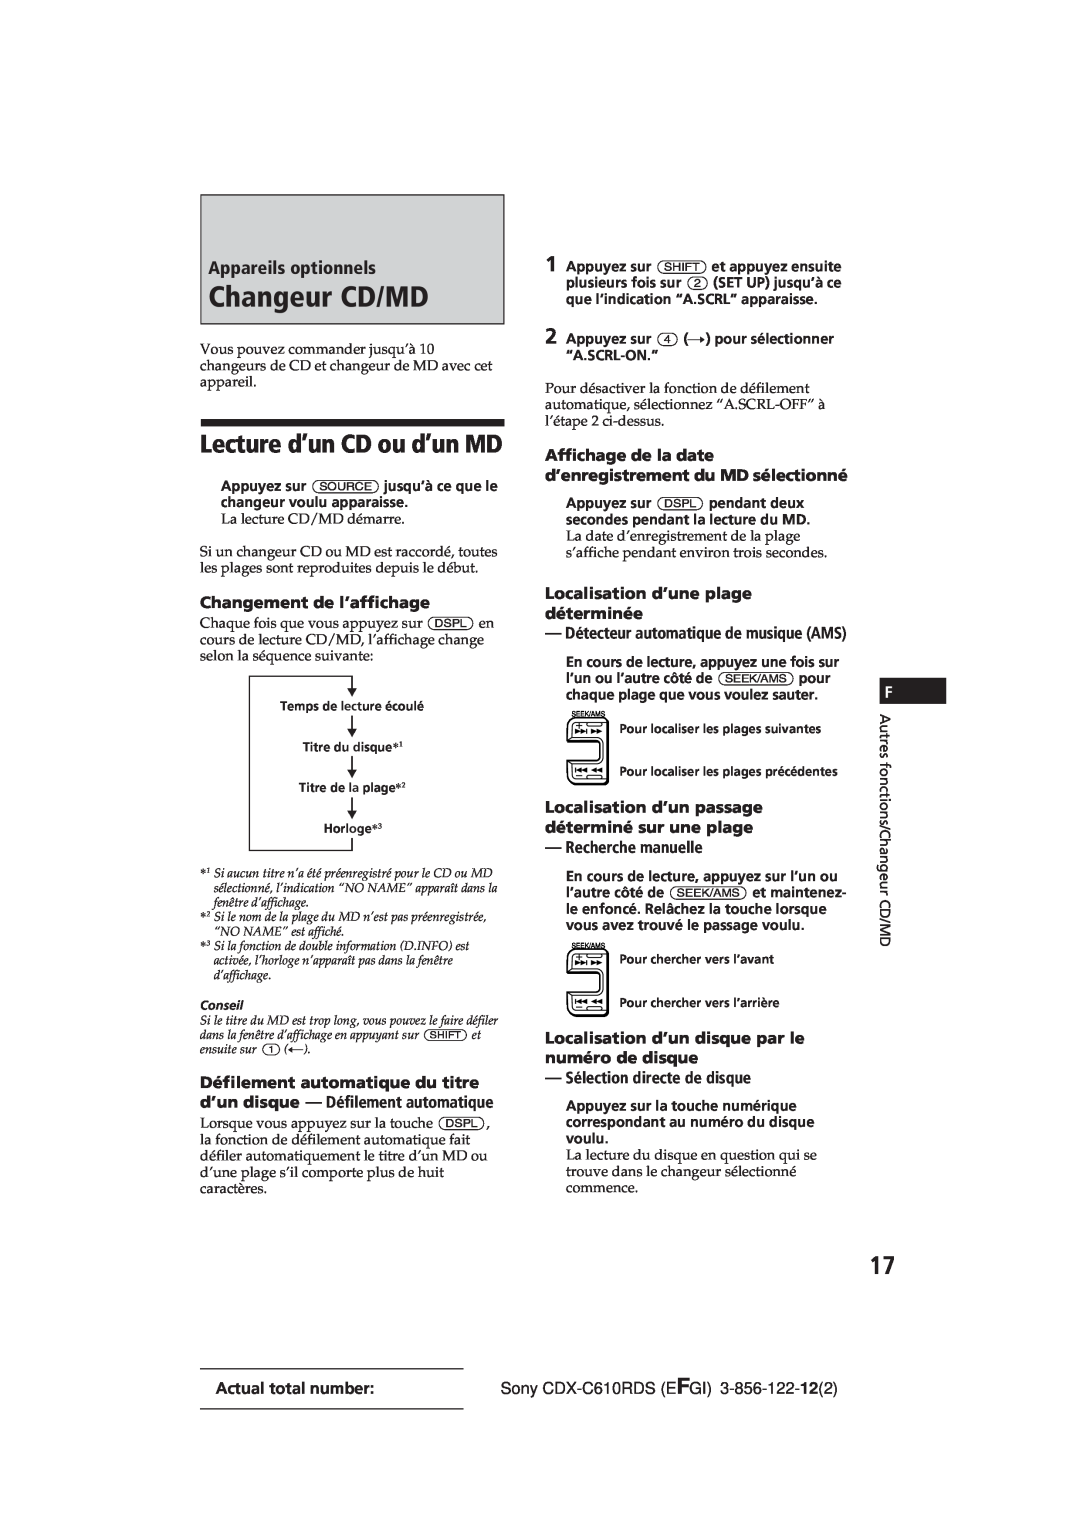 Sony CDX-C610RDS manual Changeur CD/MD, Lecture d’un CD ou d’un MD, Appareils optionnels, Changement de l’affichage 